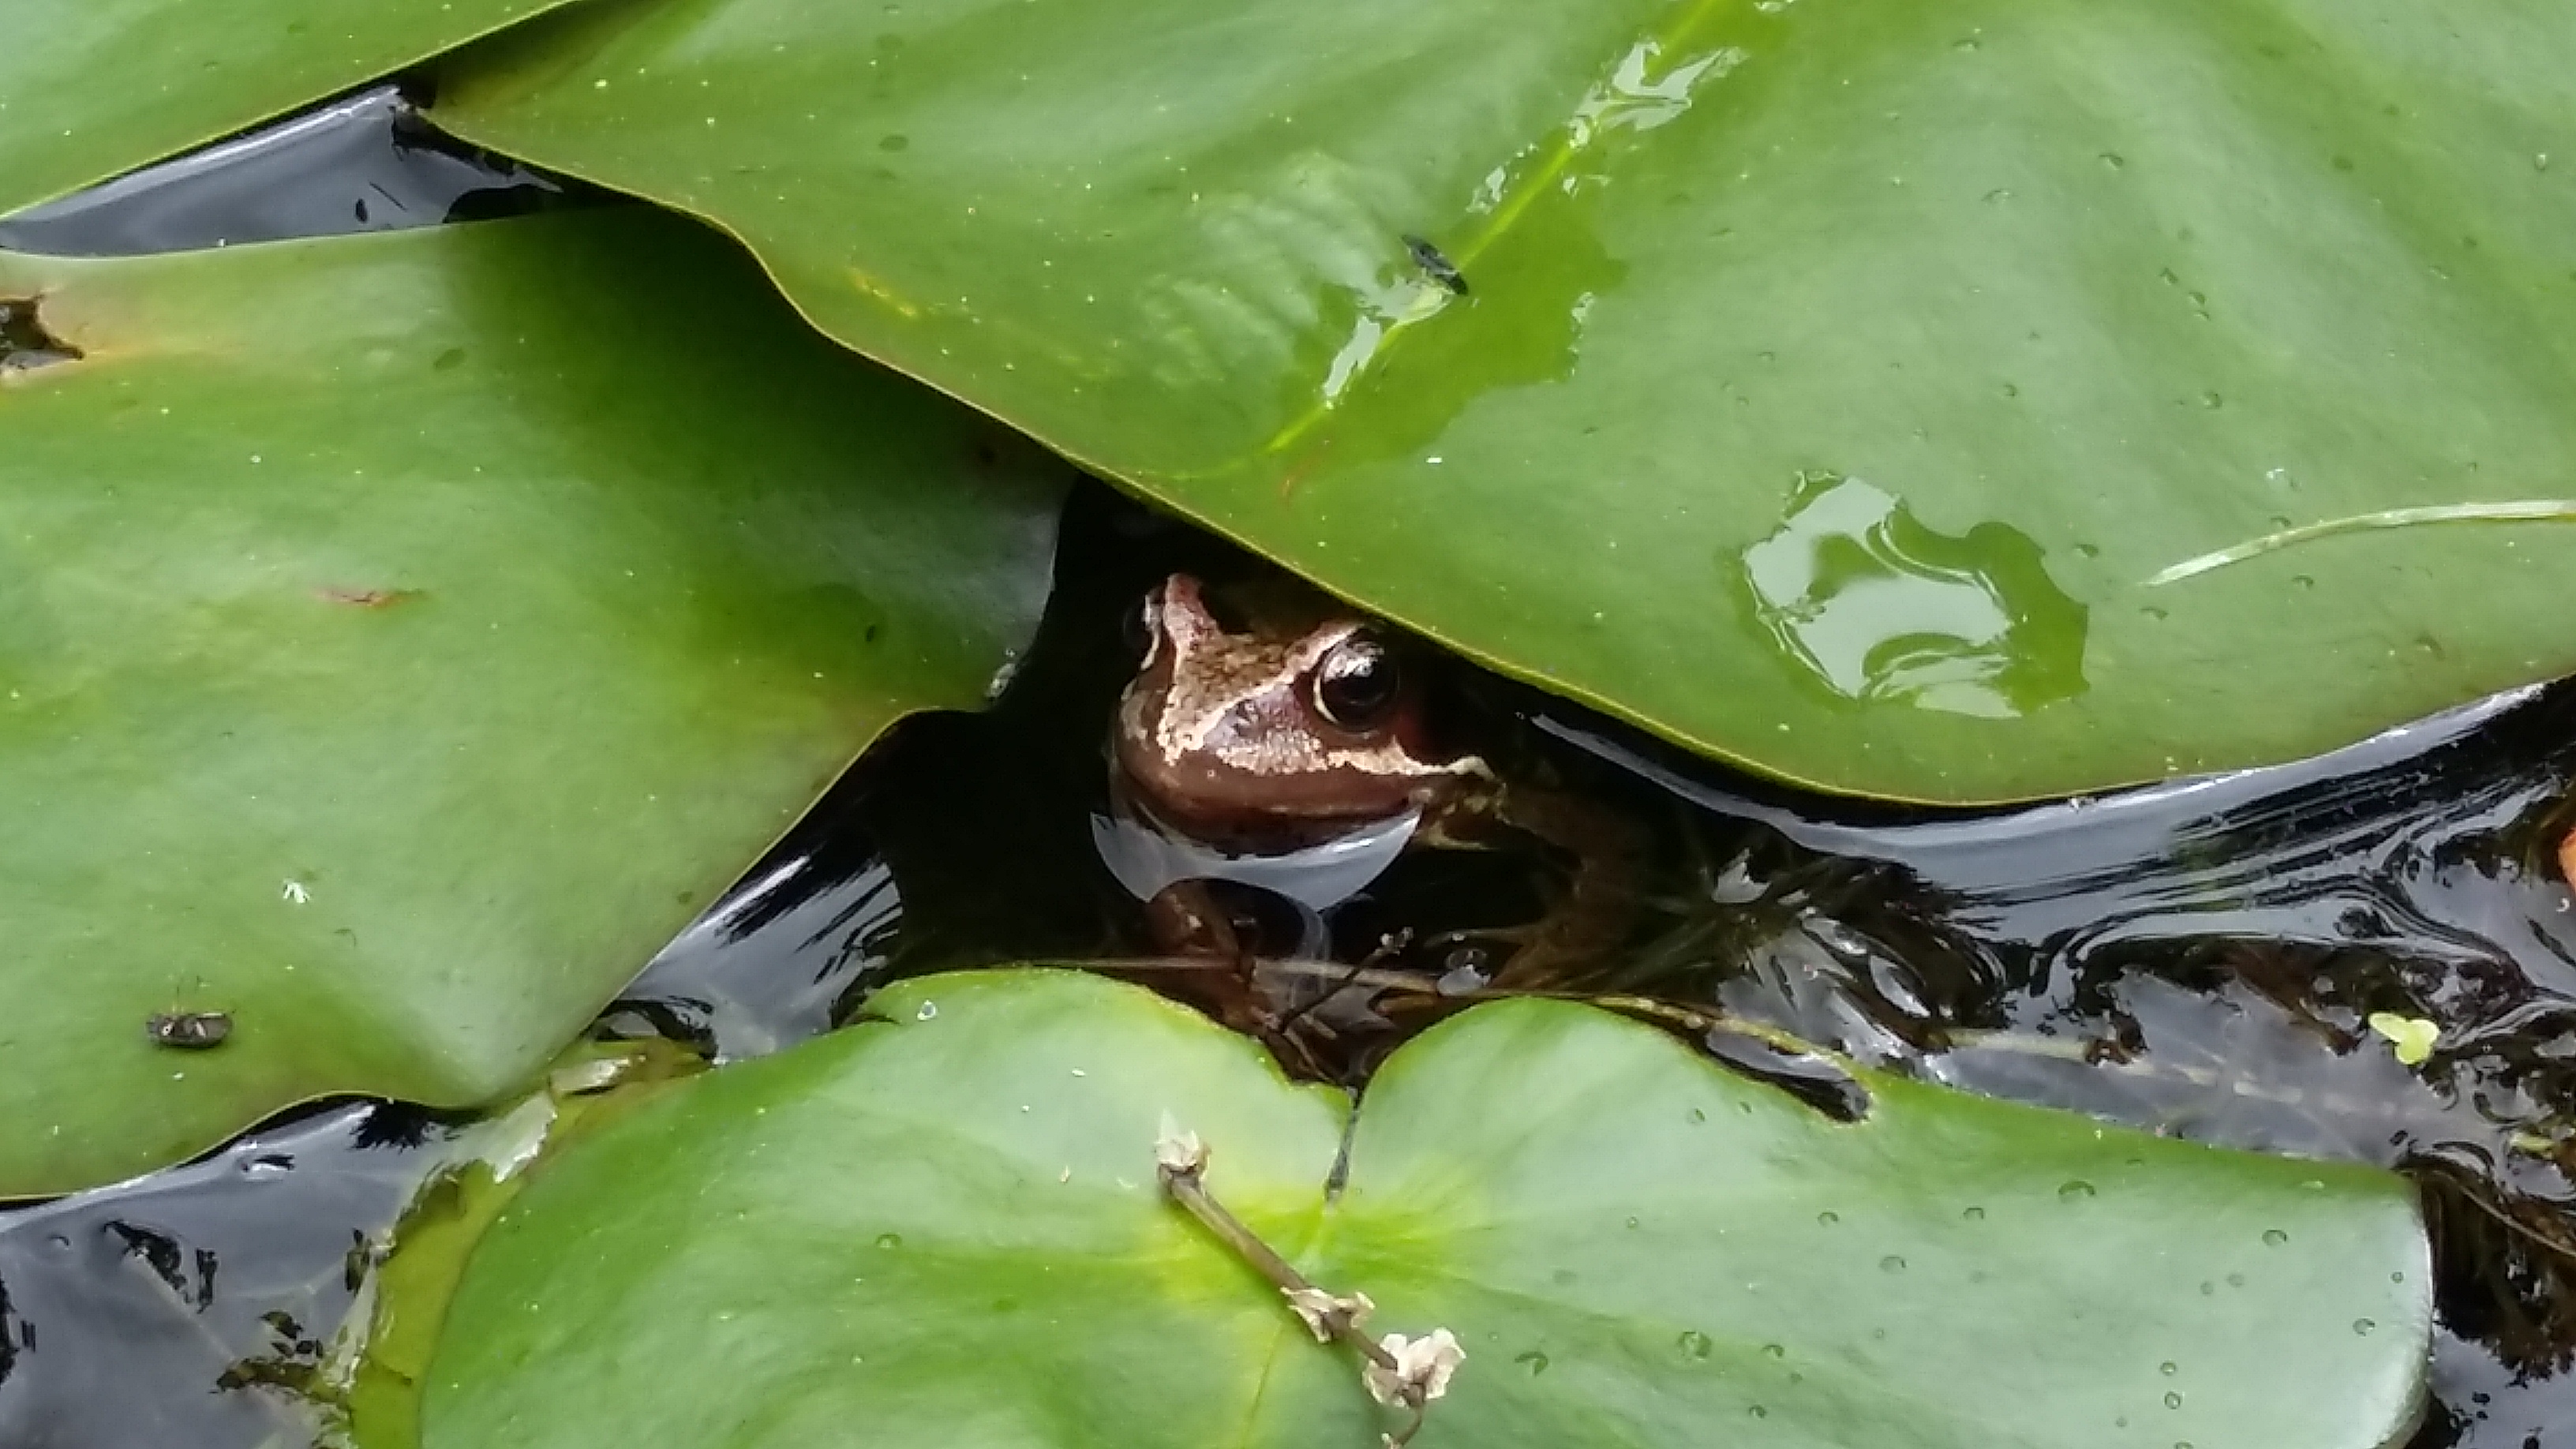 Frog in tree nursery pond (c) Lori Moore